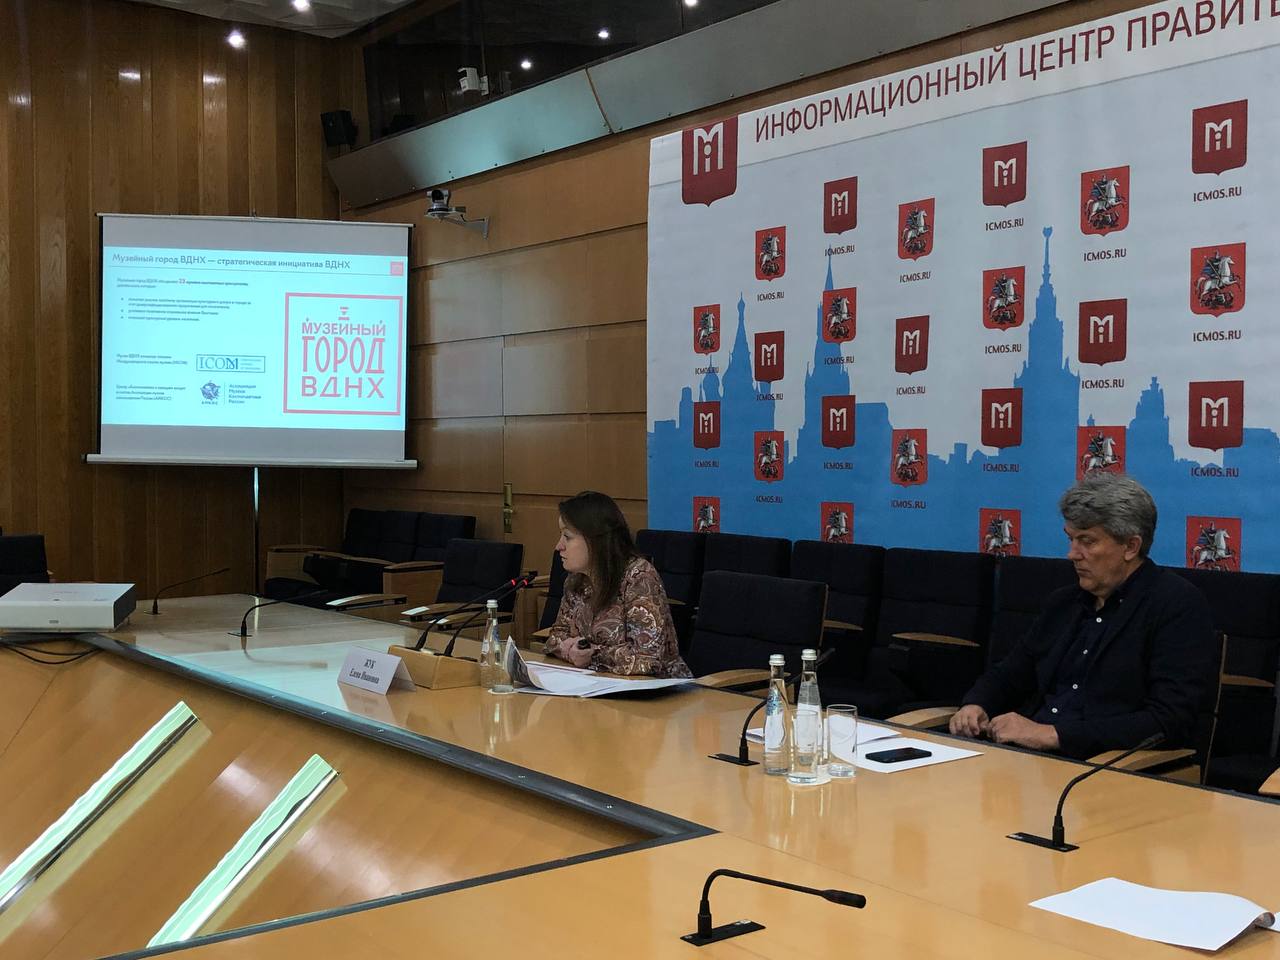 Наука, промышленность и искусство: в Москве состоялась конференция о работе Музейного города ВДНХ